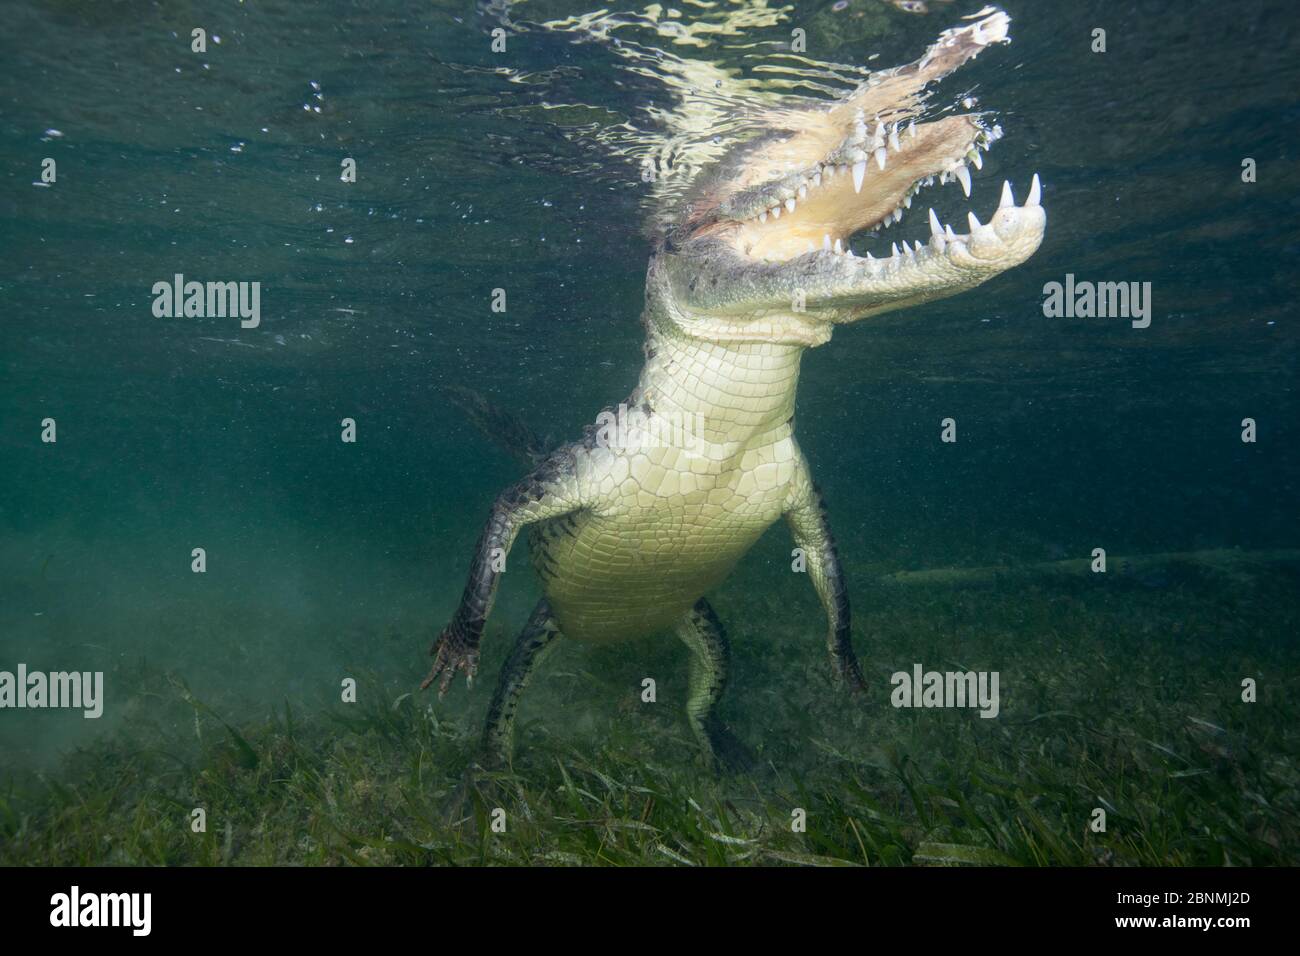 Crocodile américain (Crocodylus acutus) surfaçage à la respiration, Réserve de biosphère de Banco Chinchorro, région des Caraïbes, Mexique Banque D'Images